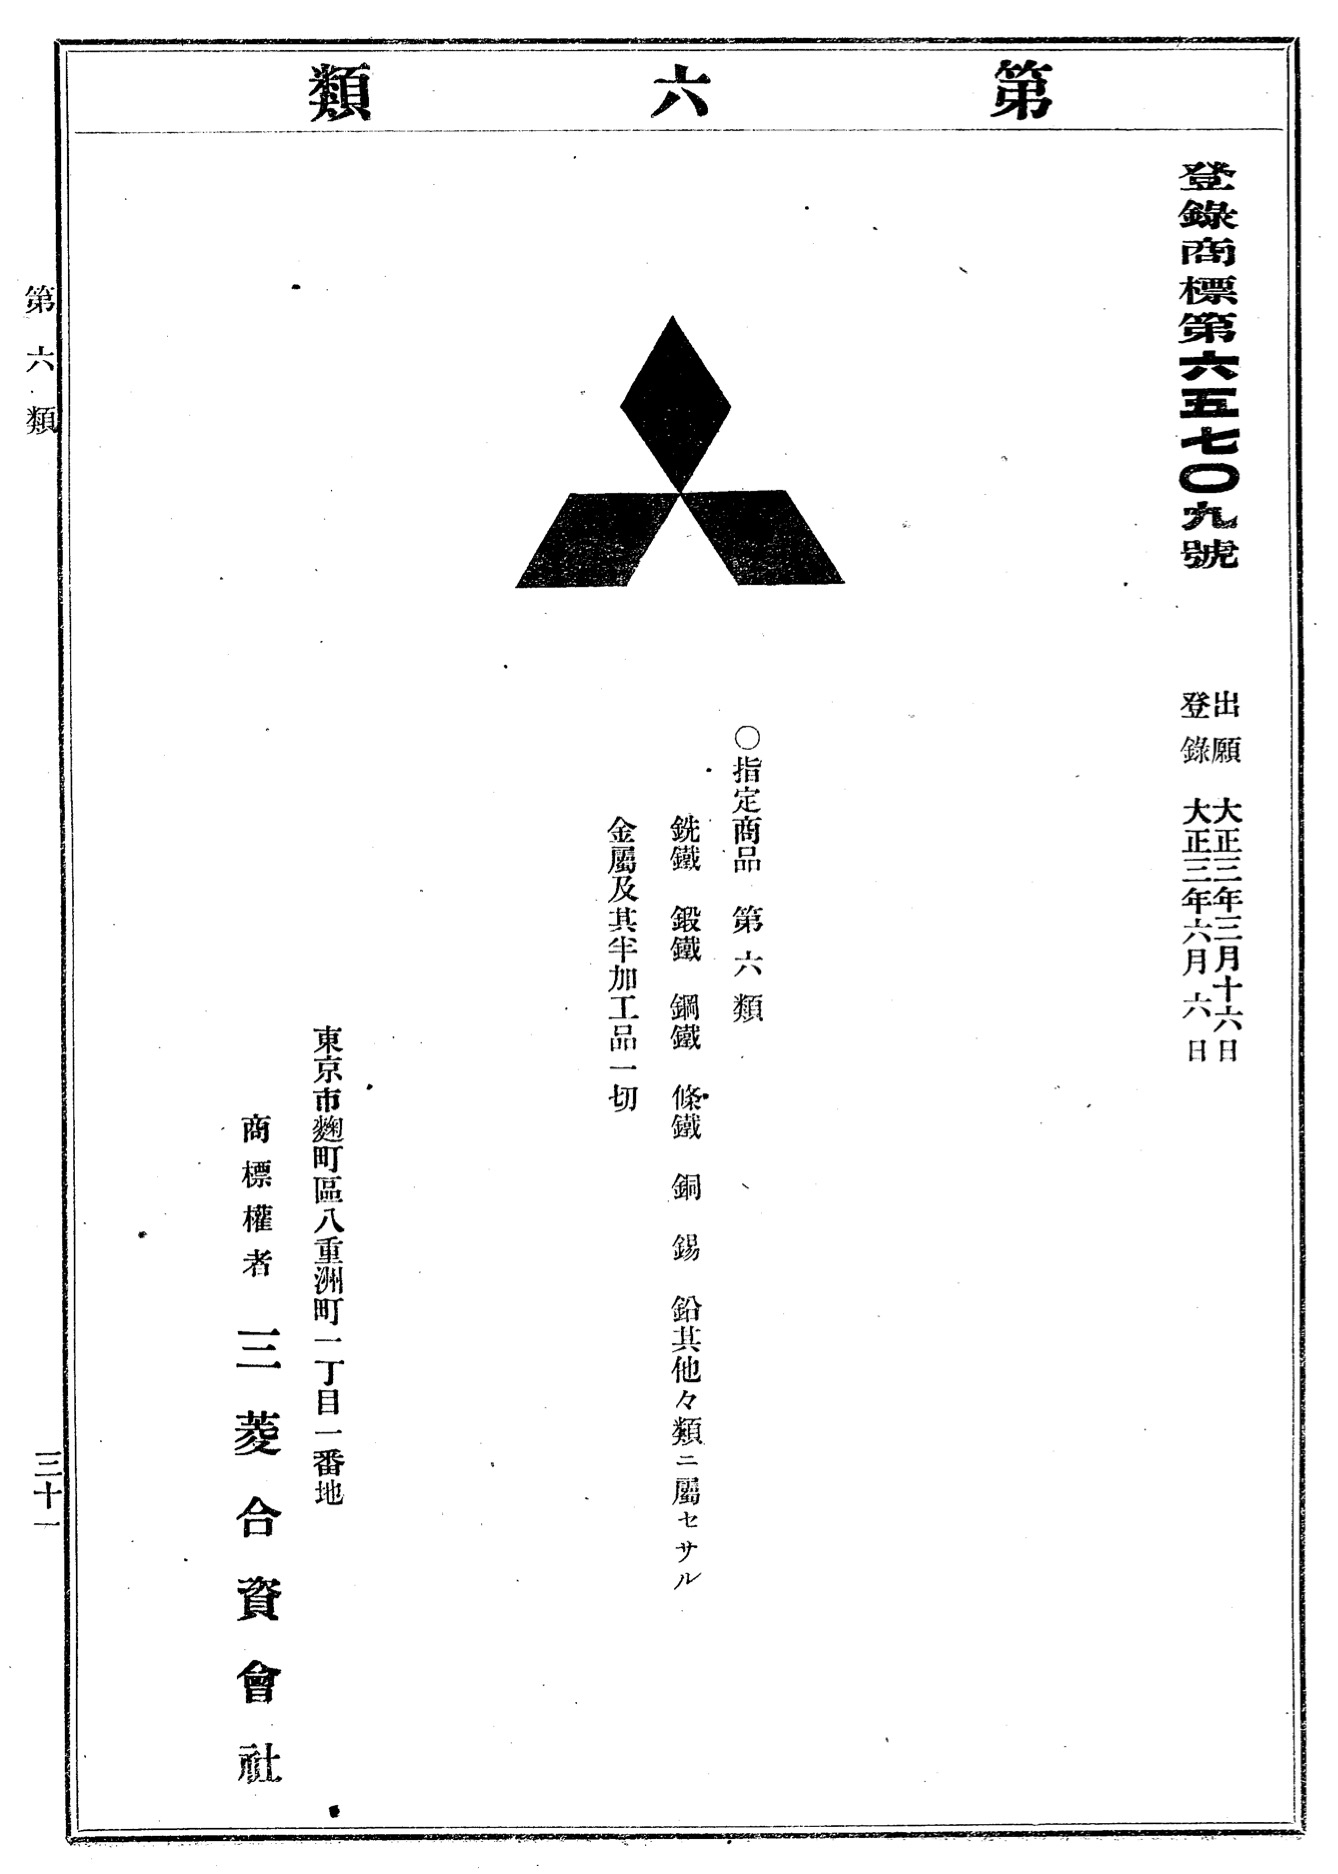 三菱グループの源流である三菱合資会社が登録した三菱マーク商標（当時の公報より）